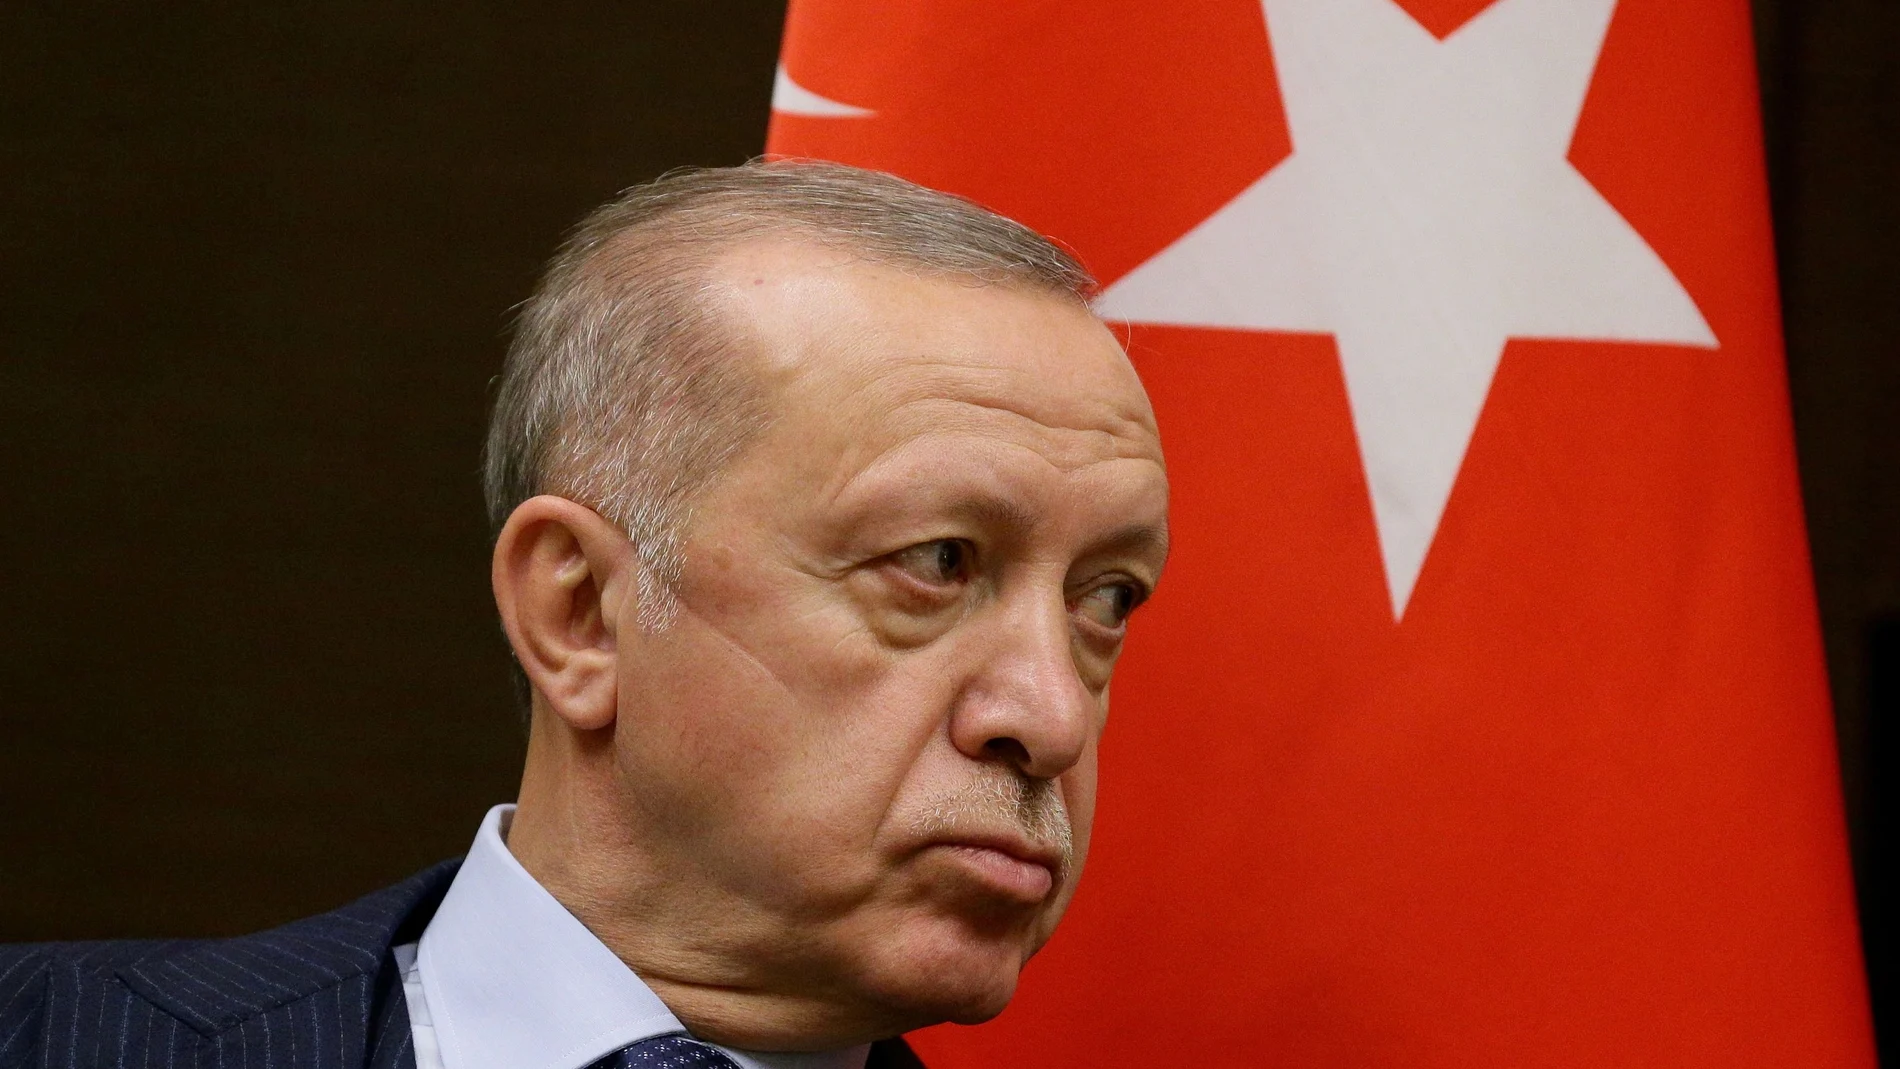 El presidente turco, Recep Tayyip Erdogan, aseguró que "quienes no conocen ni entienden Turquía se irán”